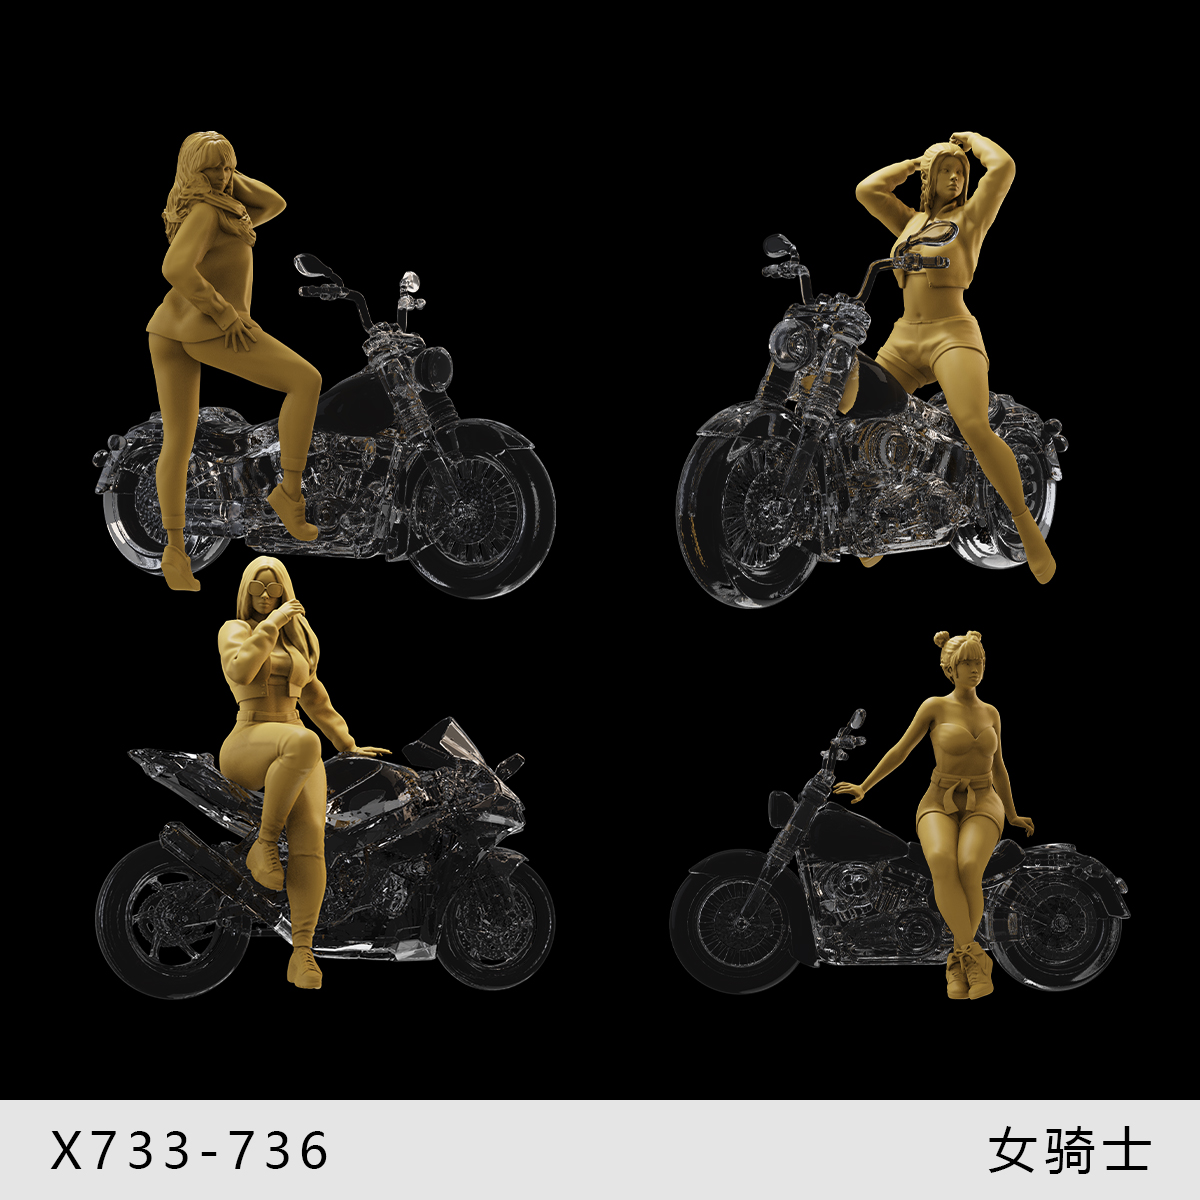 【女骑士】和摩托车搭配模特1/64车模小人偶模型手办1:43微缩白模